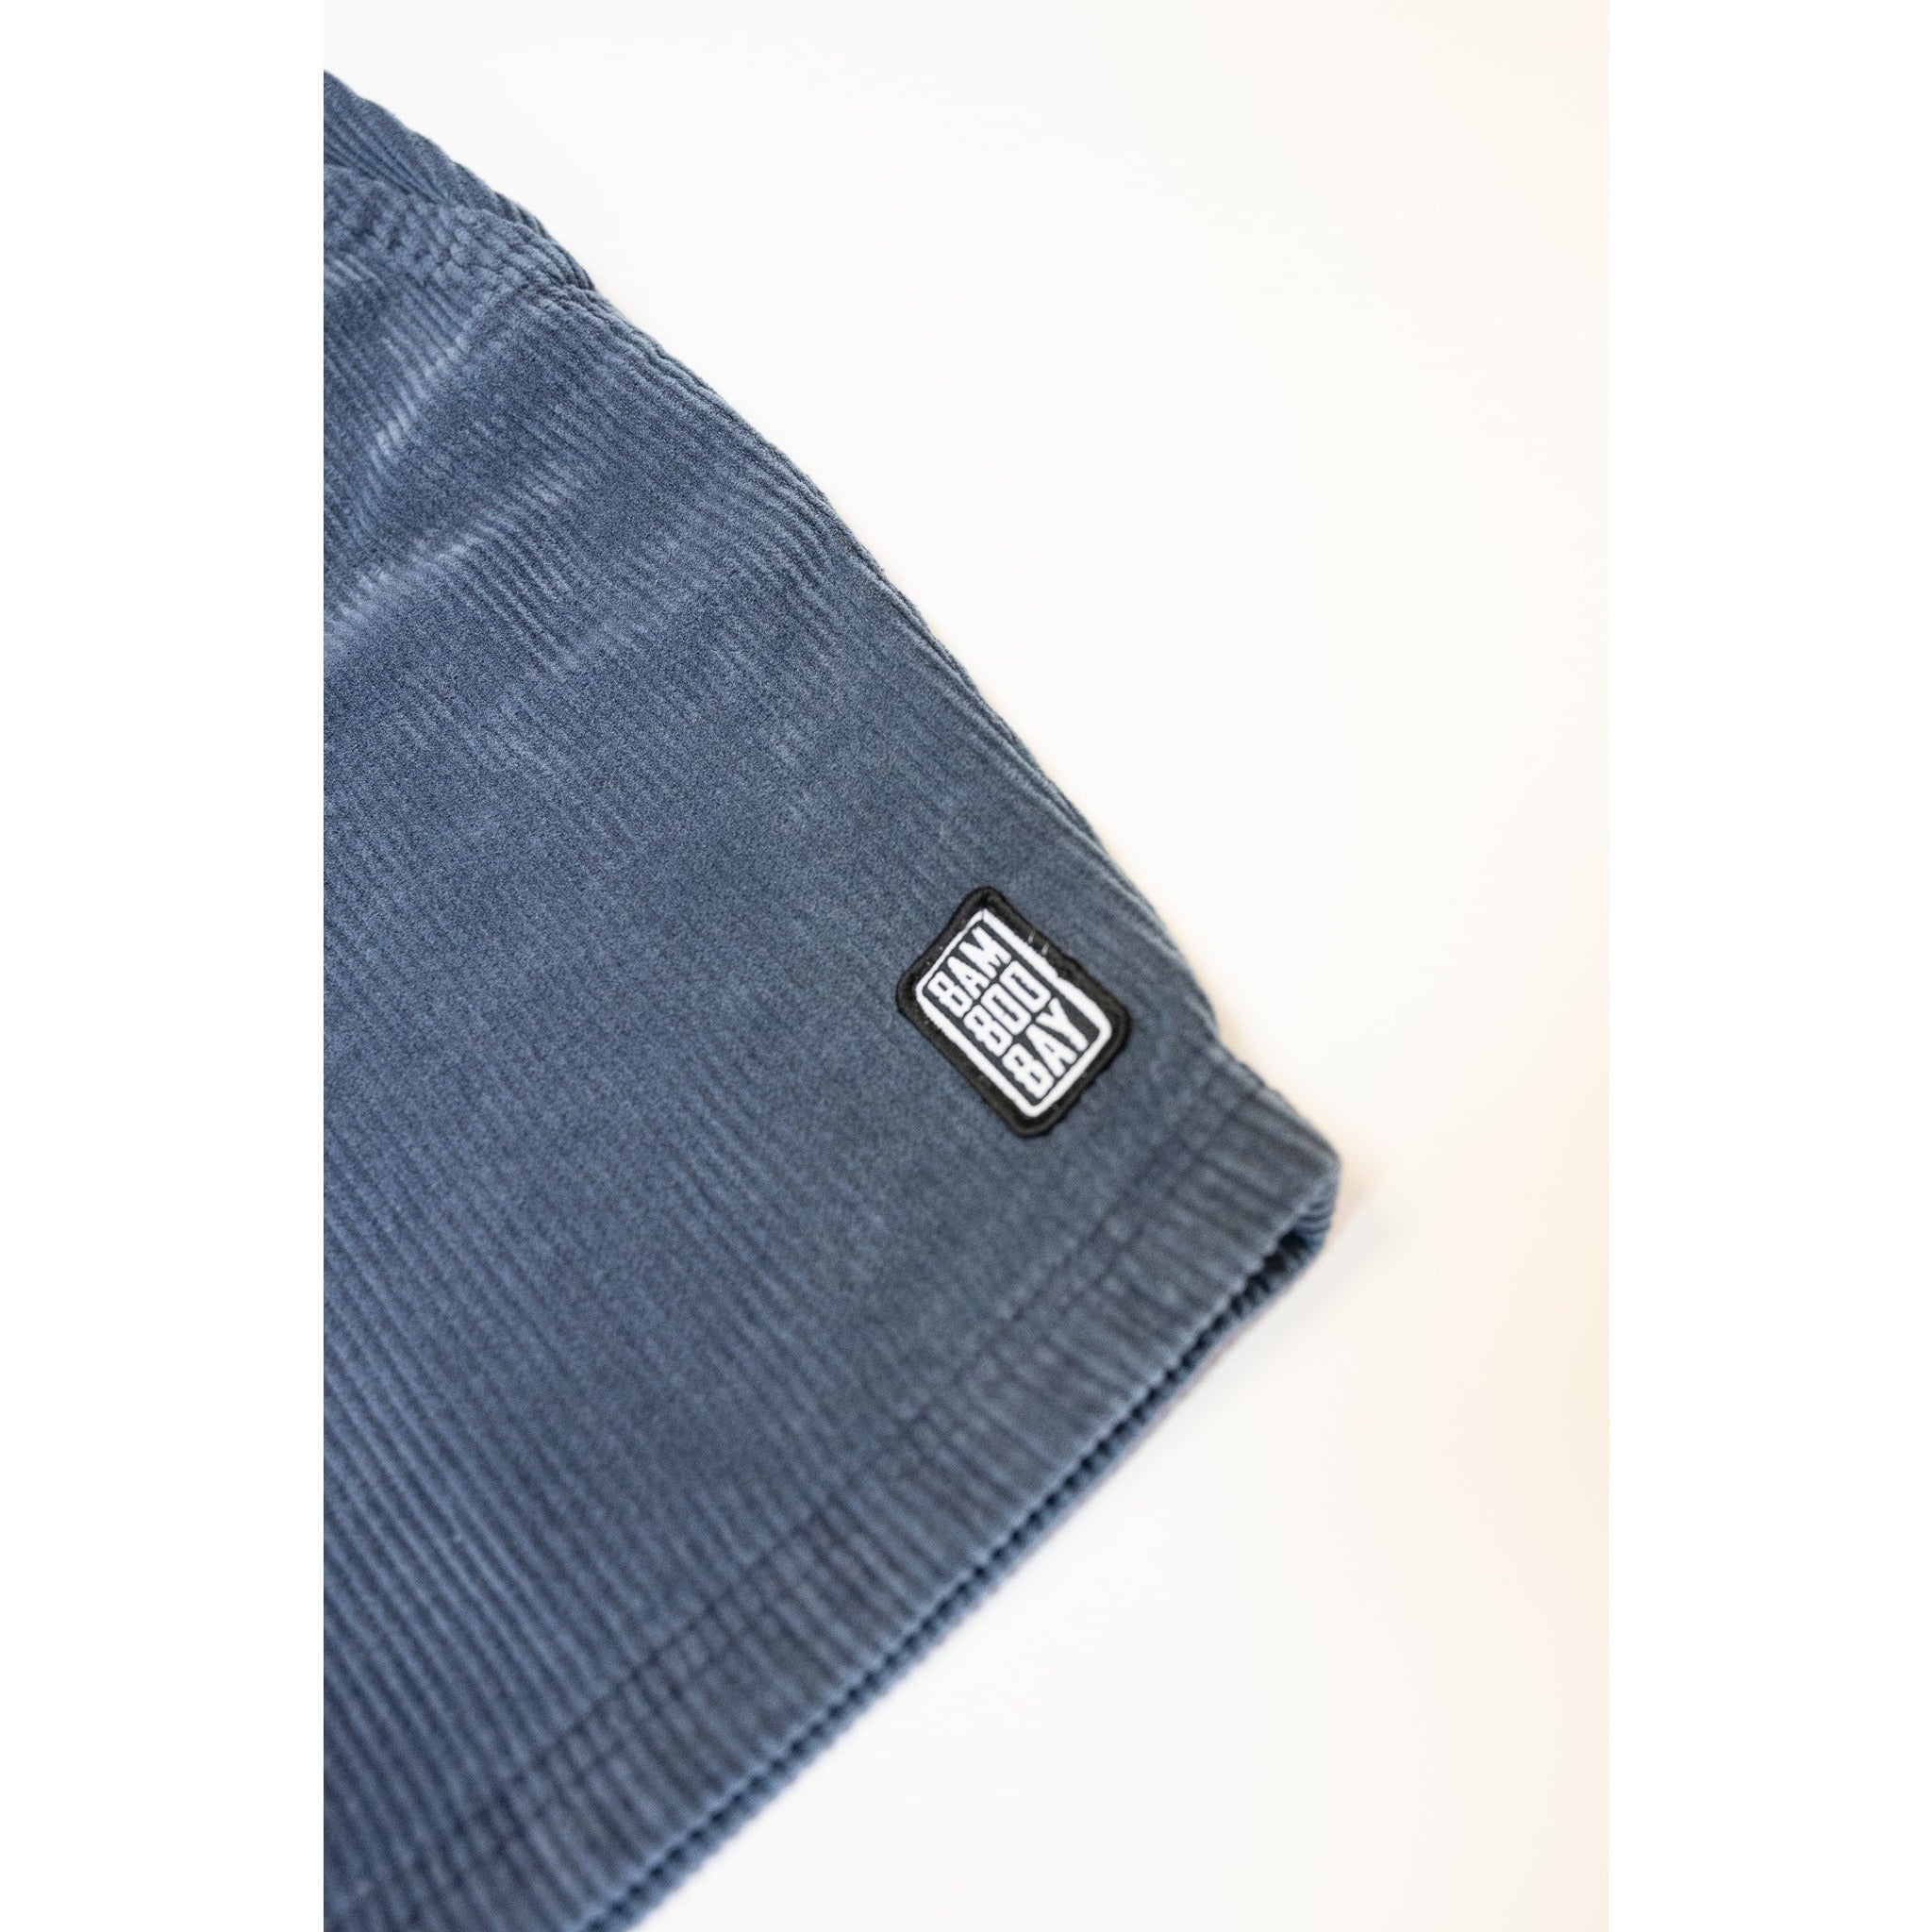 Chill Cord Organic Cotton Shorts - Navy | BamBooBay